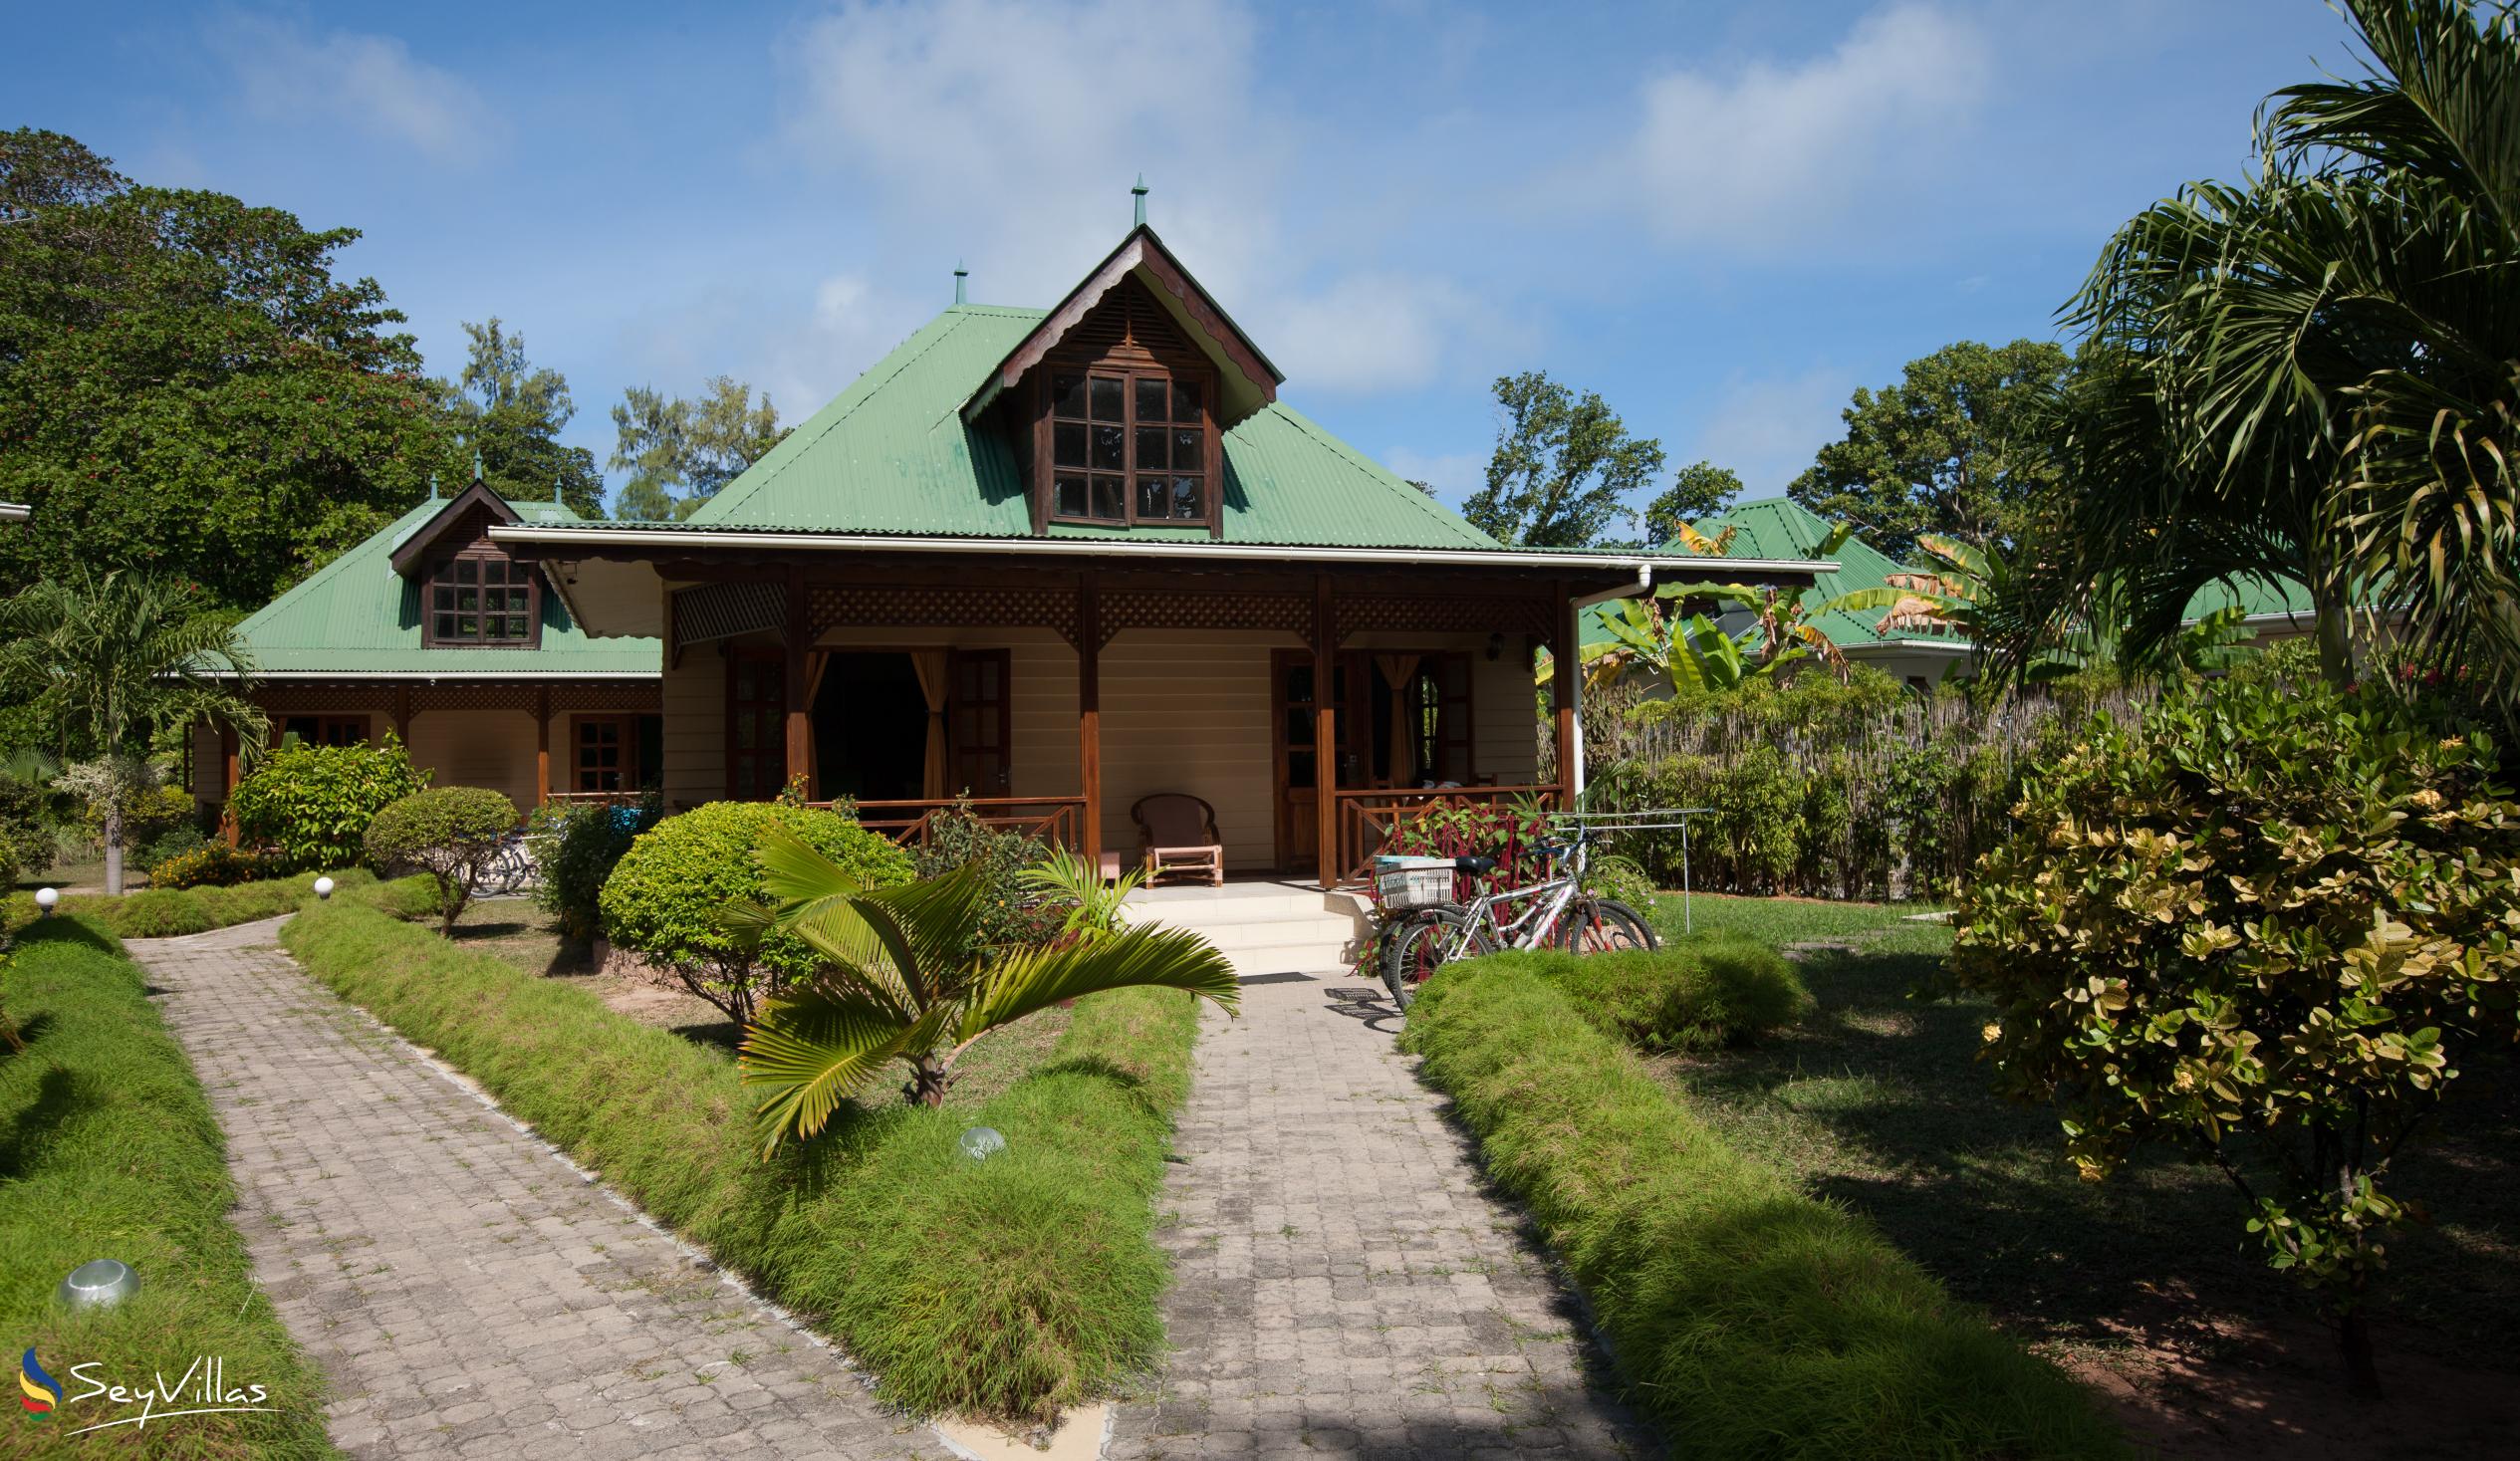 Photo 11: Villa Creole - Outdoor area - La Digue (Seychelles)